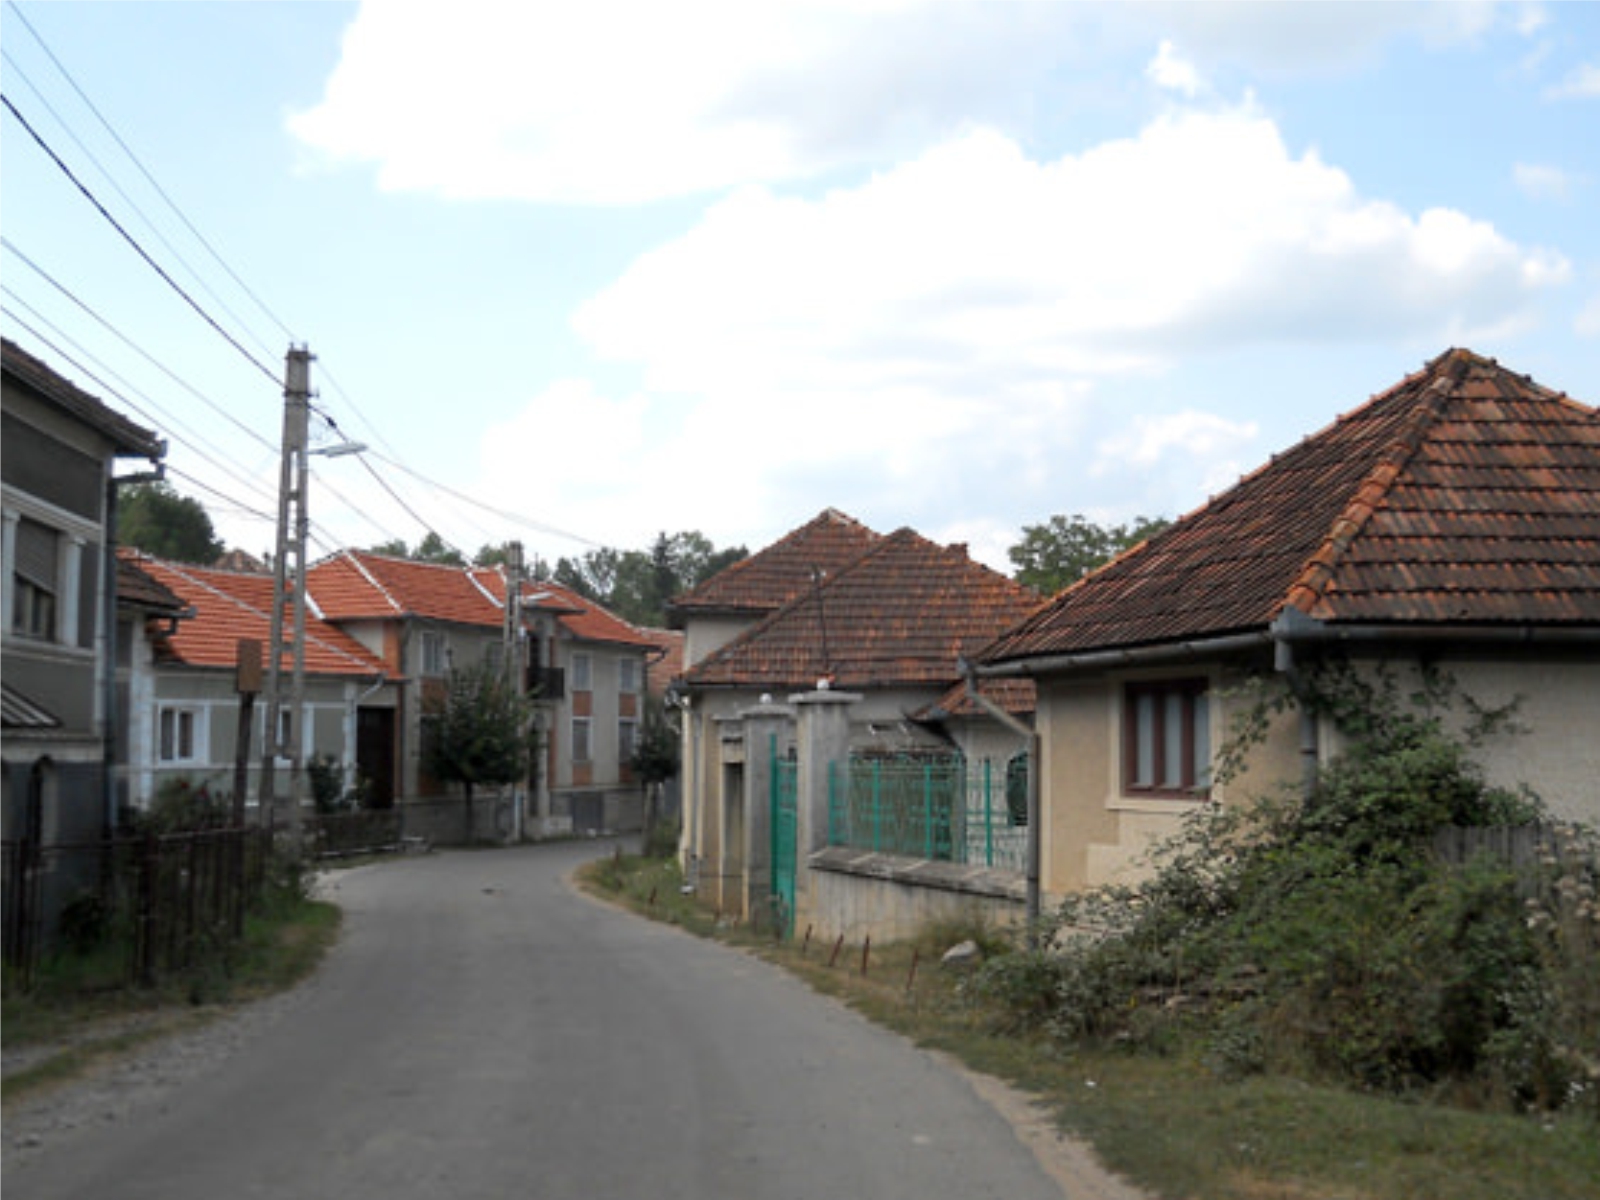 Dorf Călugări im Deutschen Siedlungsgebiet Apuseni-Gebirge in Rumänien